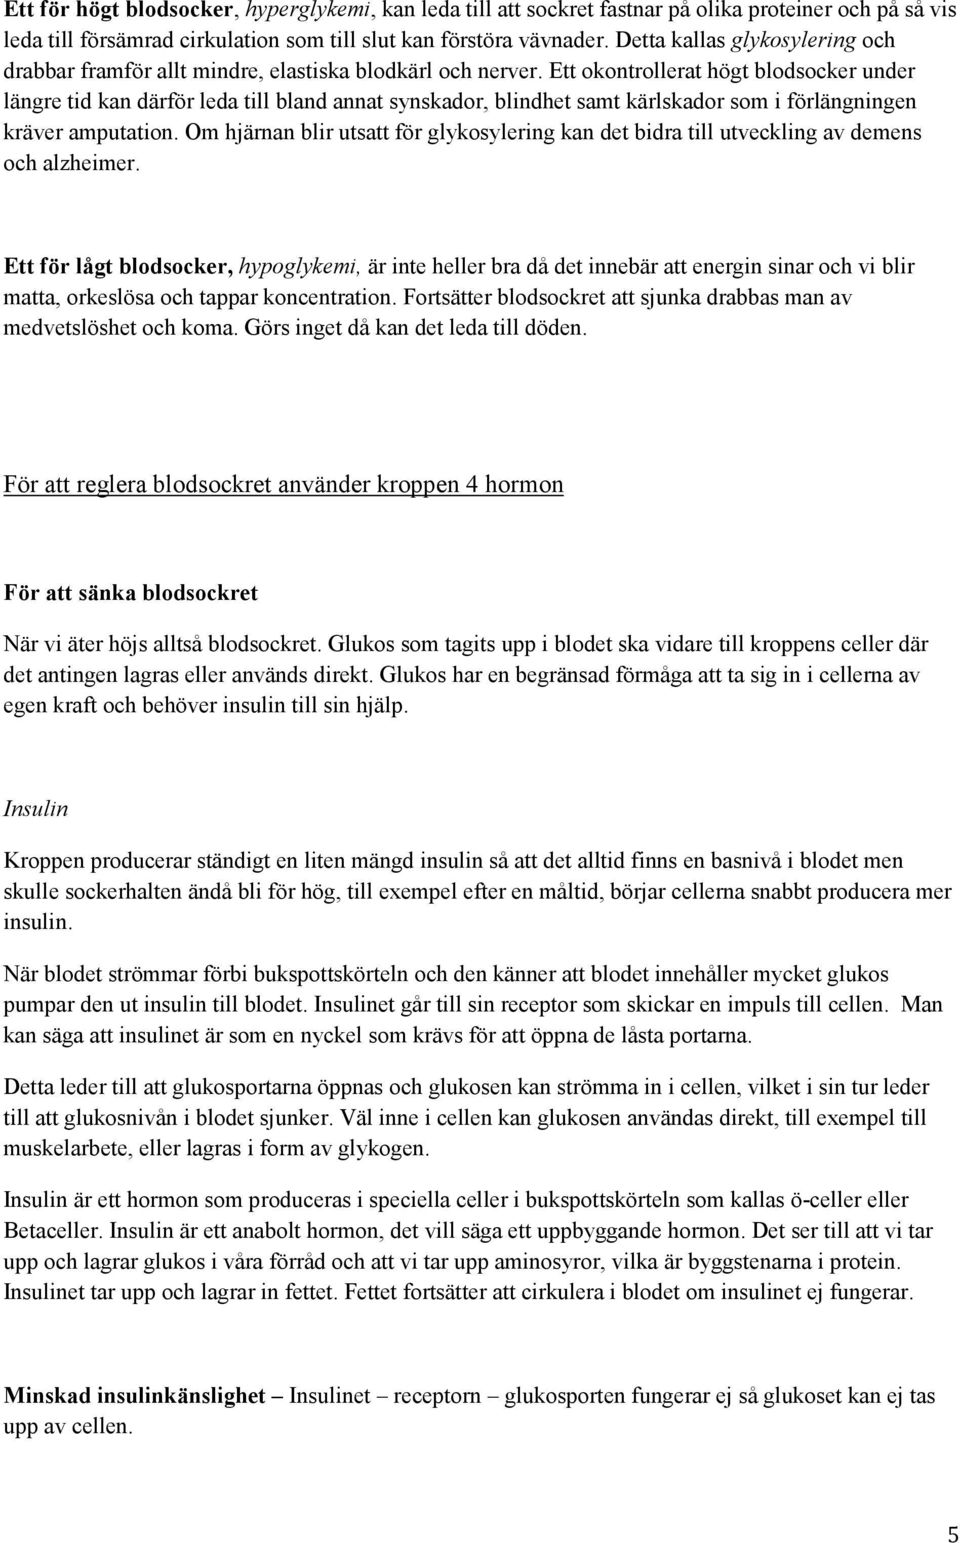 SLUTUPPSATS AKUPUNKTURAKADEMIN / PERNILLA HOLMSTEN, GRUPP 13 - PDF ...